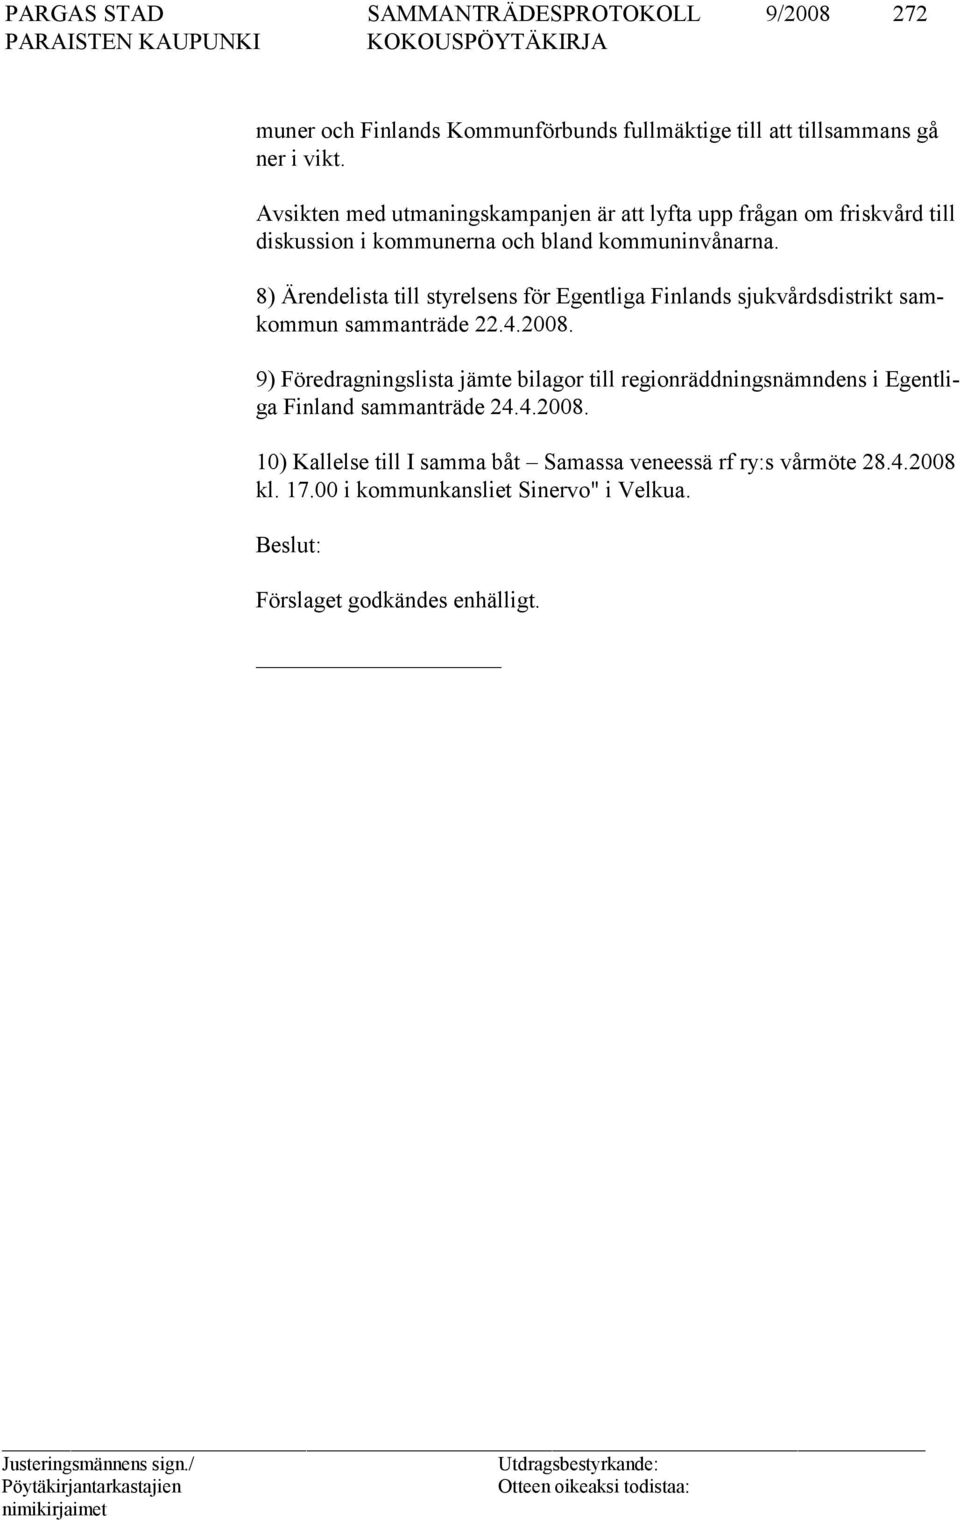 8) Ärendelista till styrelsens för Egentliga Finlands sjukvårdsdist rikt samkommun sammanträde 22.4.2008.